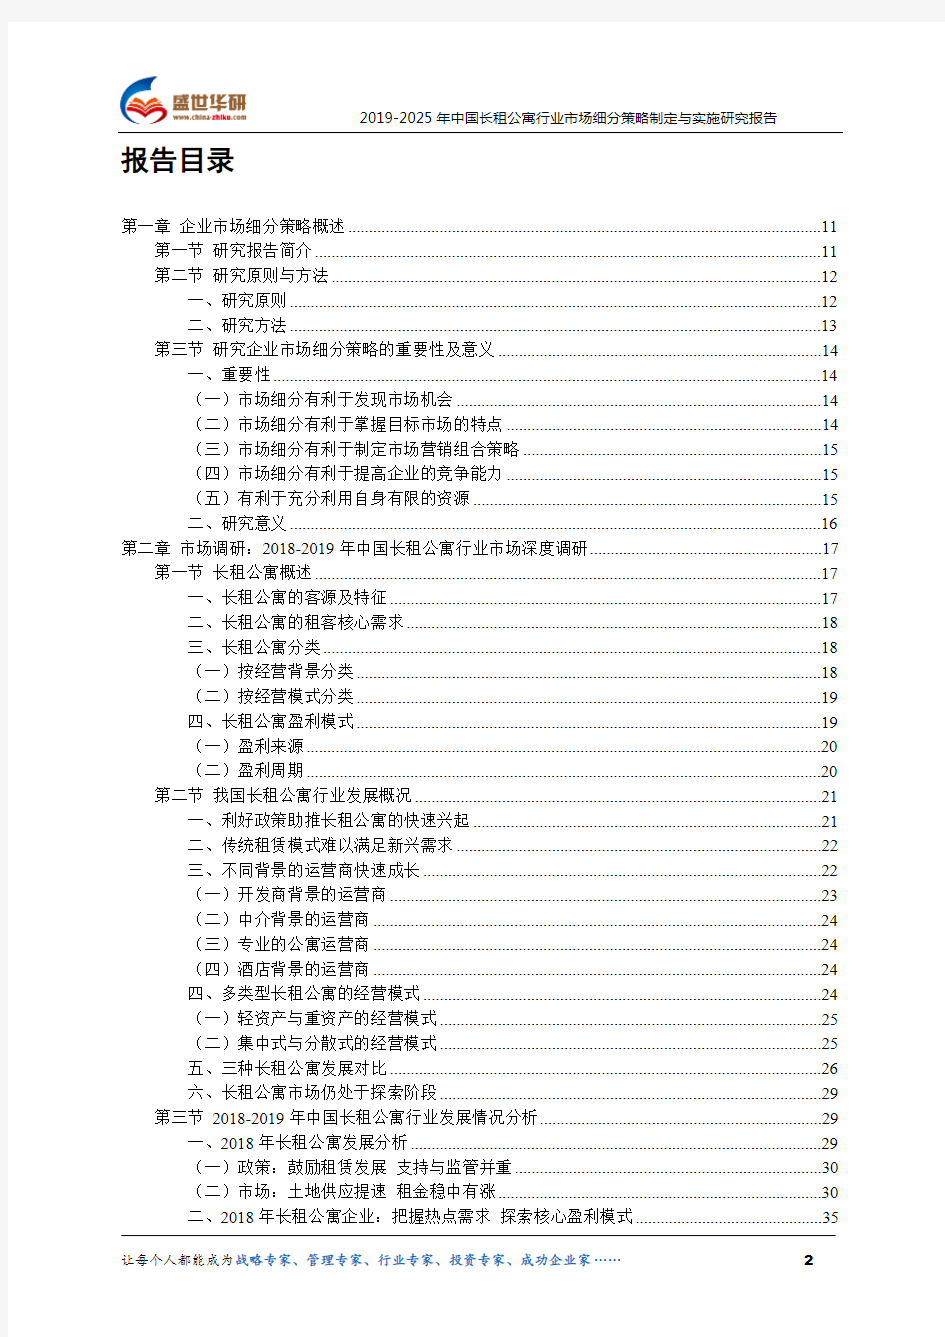 【完整版】2019-2025年中国长租公寓行业市场细分策略制定与实施研究报告